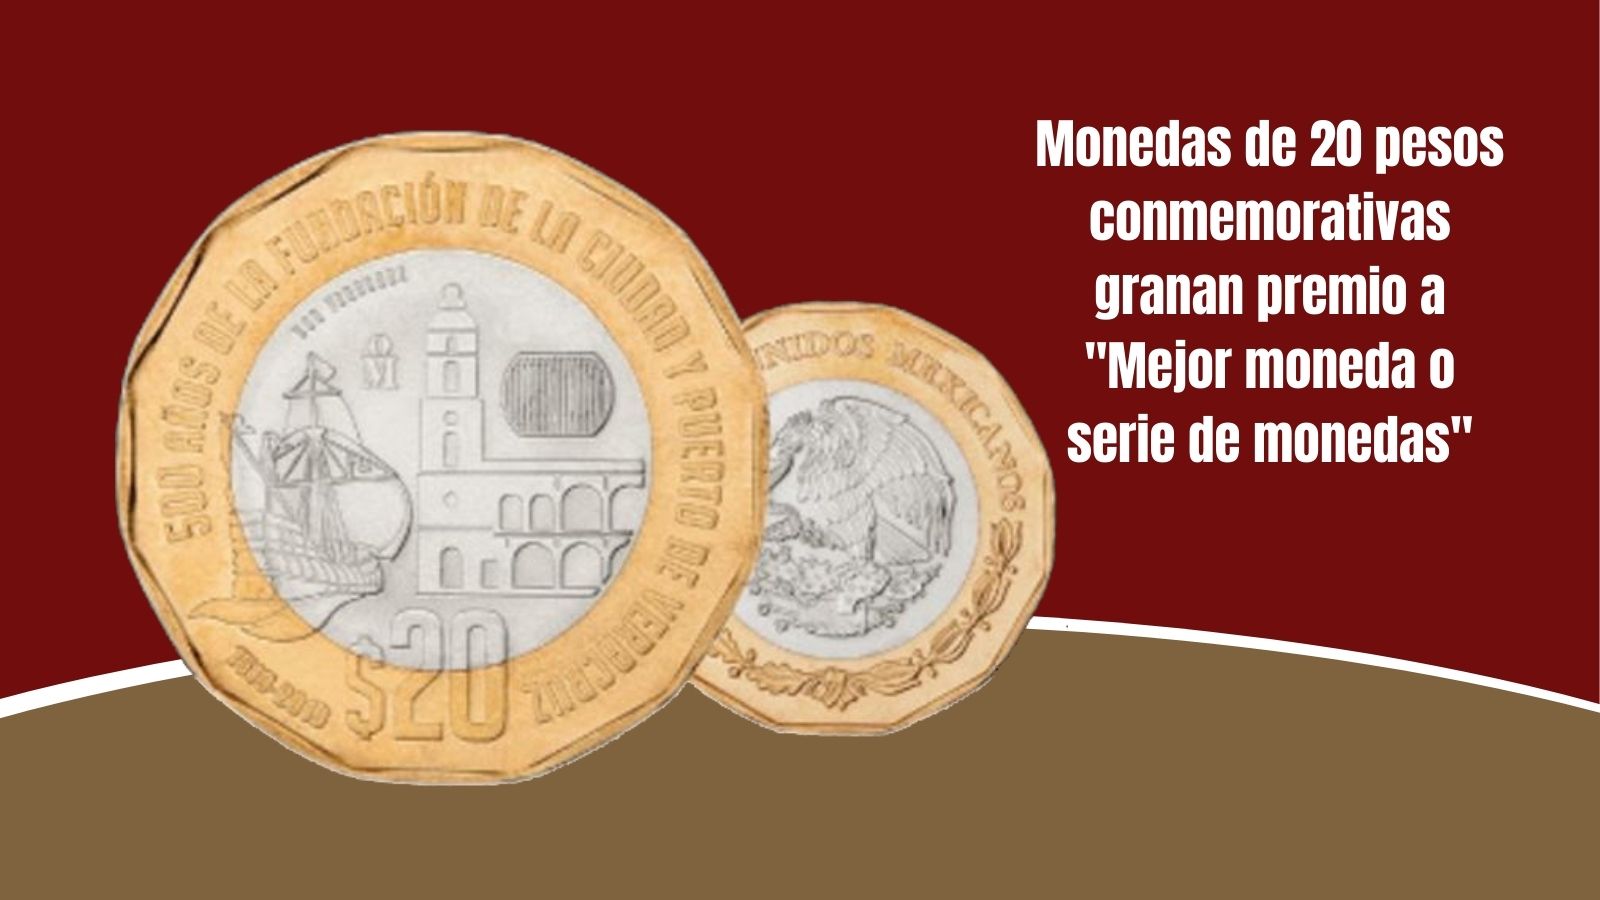 Banxico premio moneda conmemorativa 20 pesos